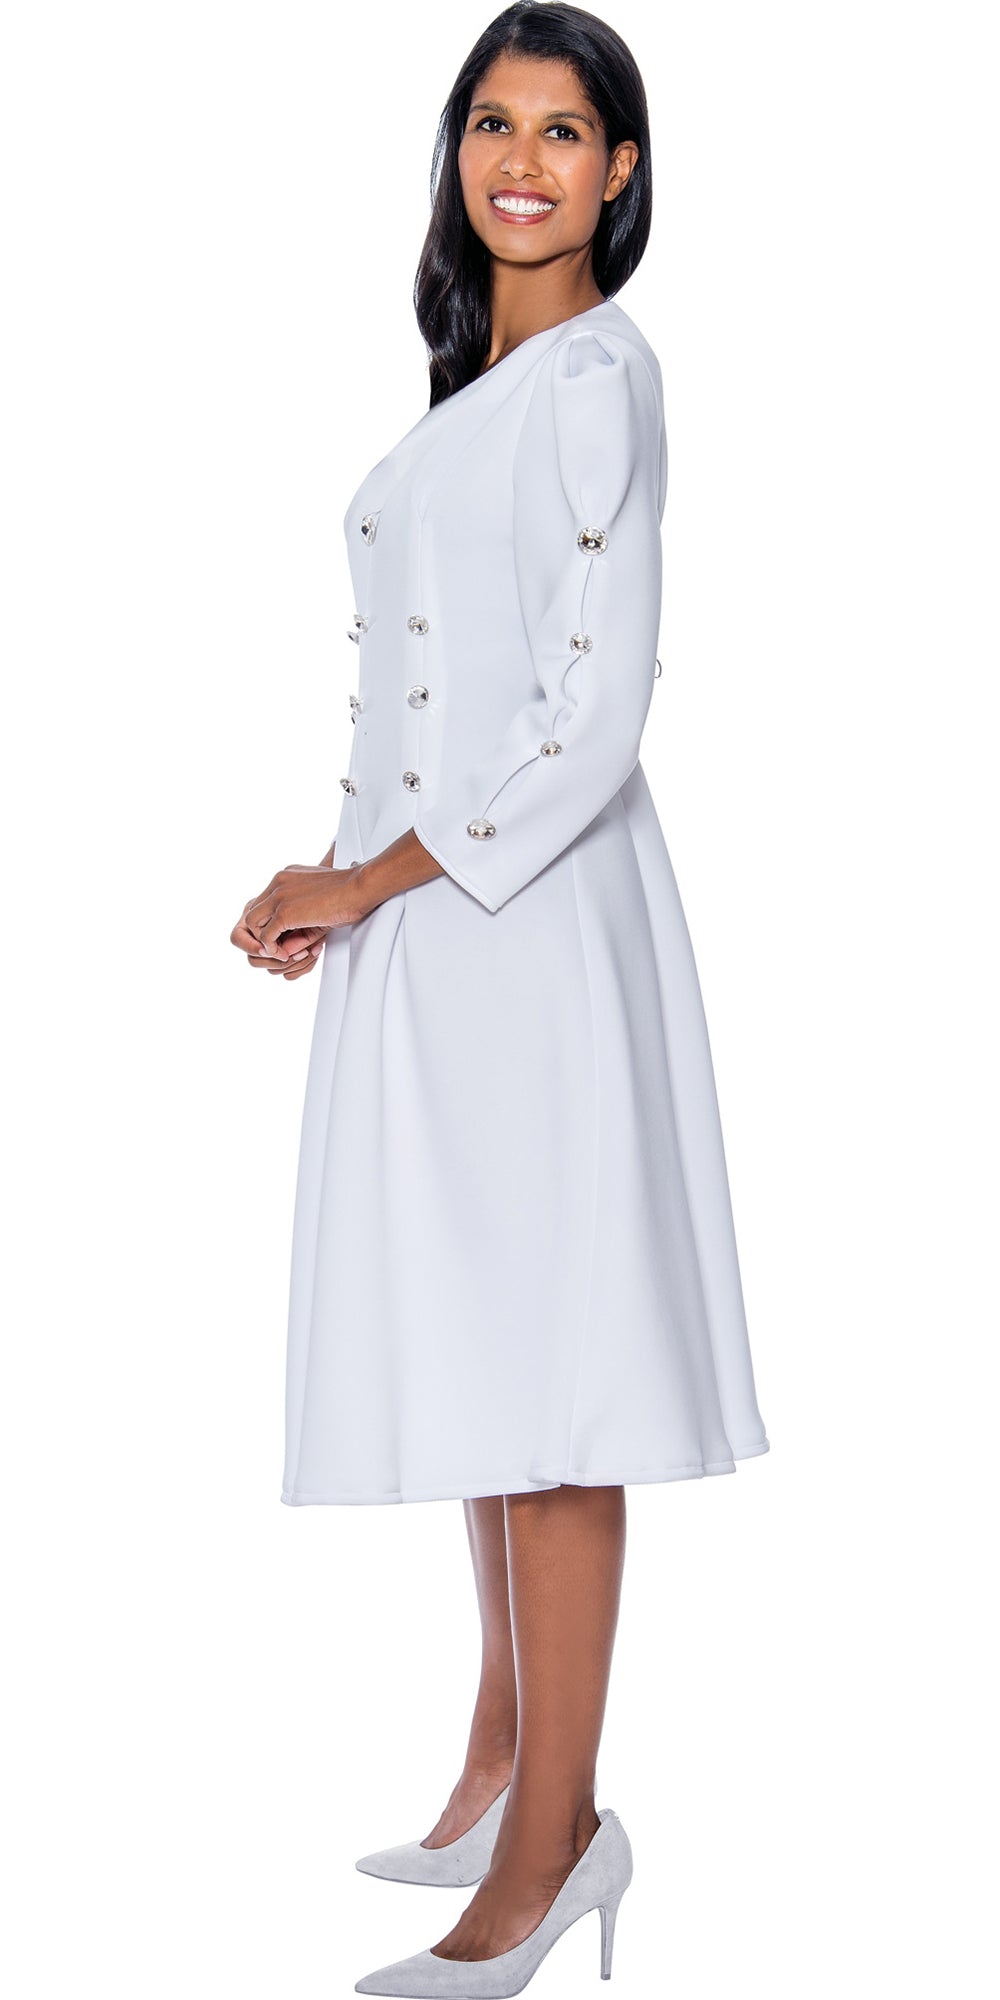 Stellar Looks SL1251 - White - Flared Skirt Dress